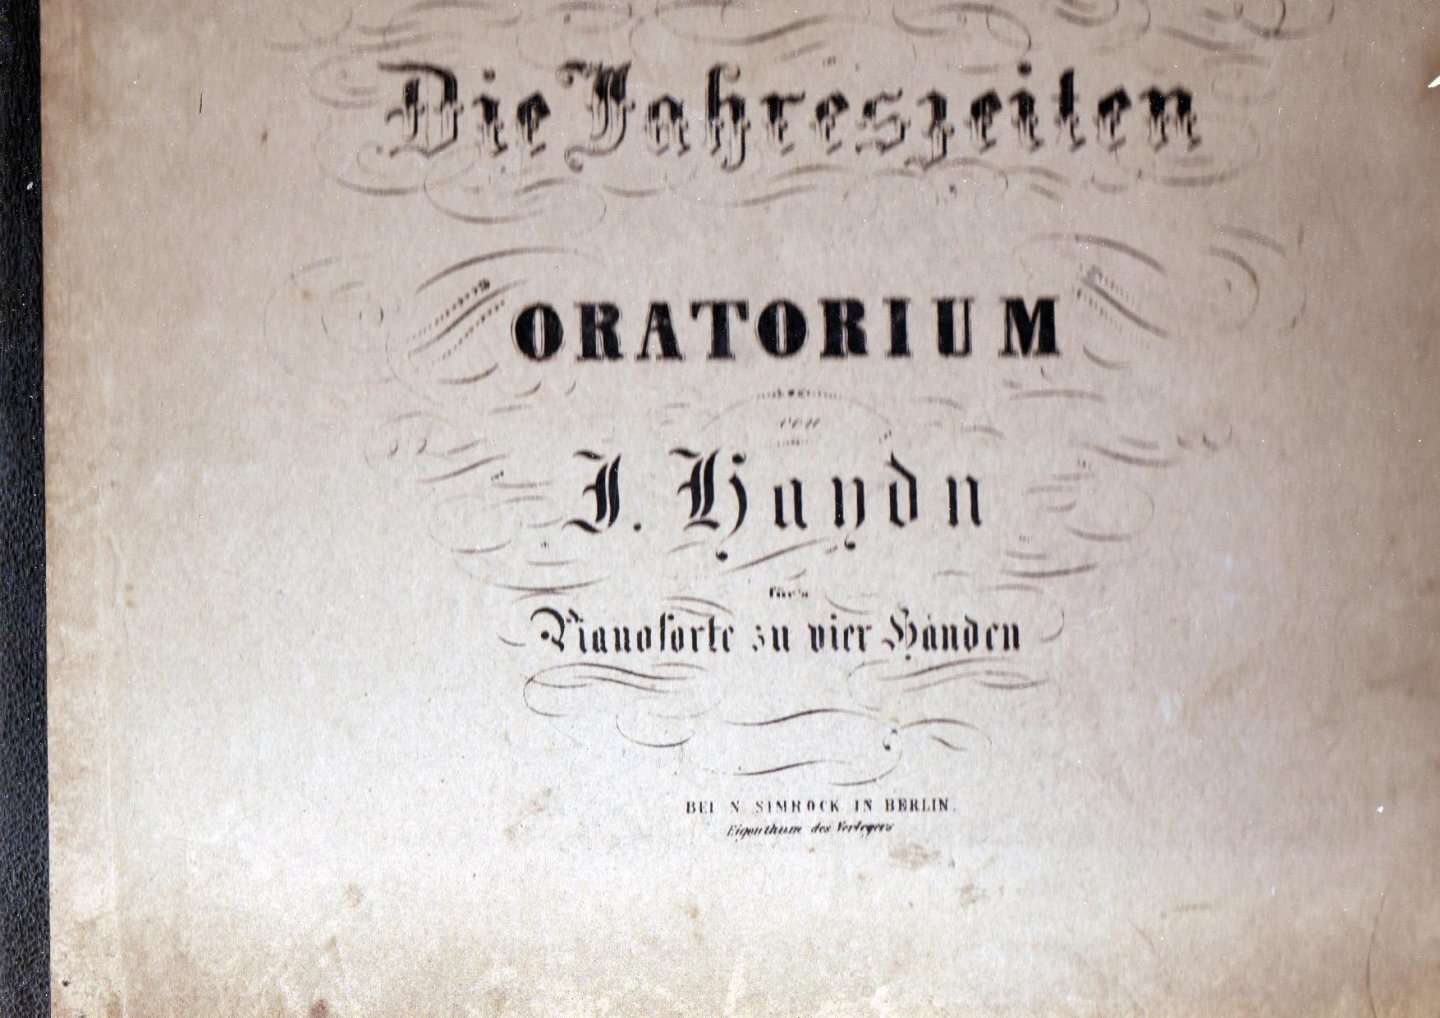 Haydn, Jozef Sheet music - Die jahreszeiten oratorium pianoforte zu vier händen